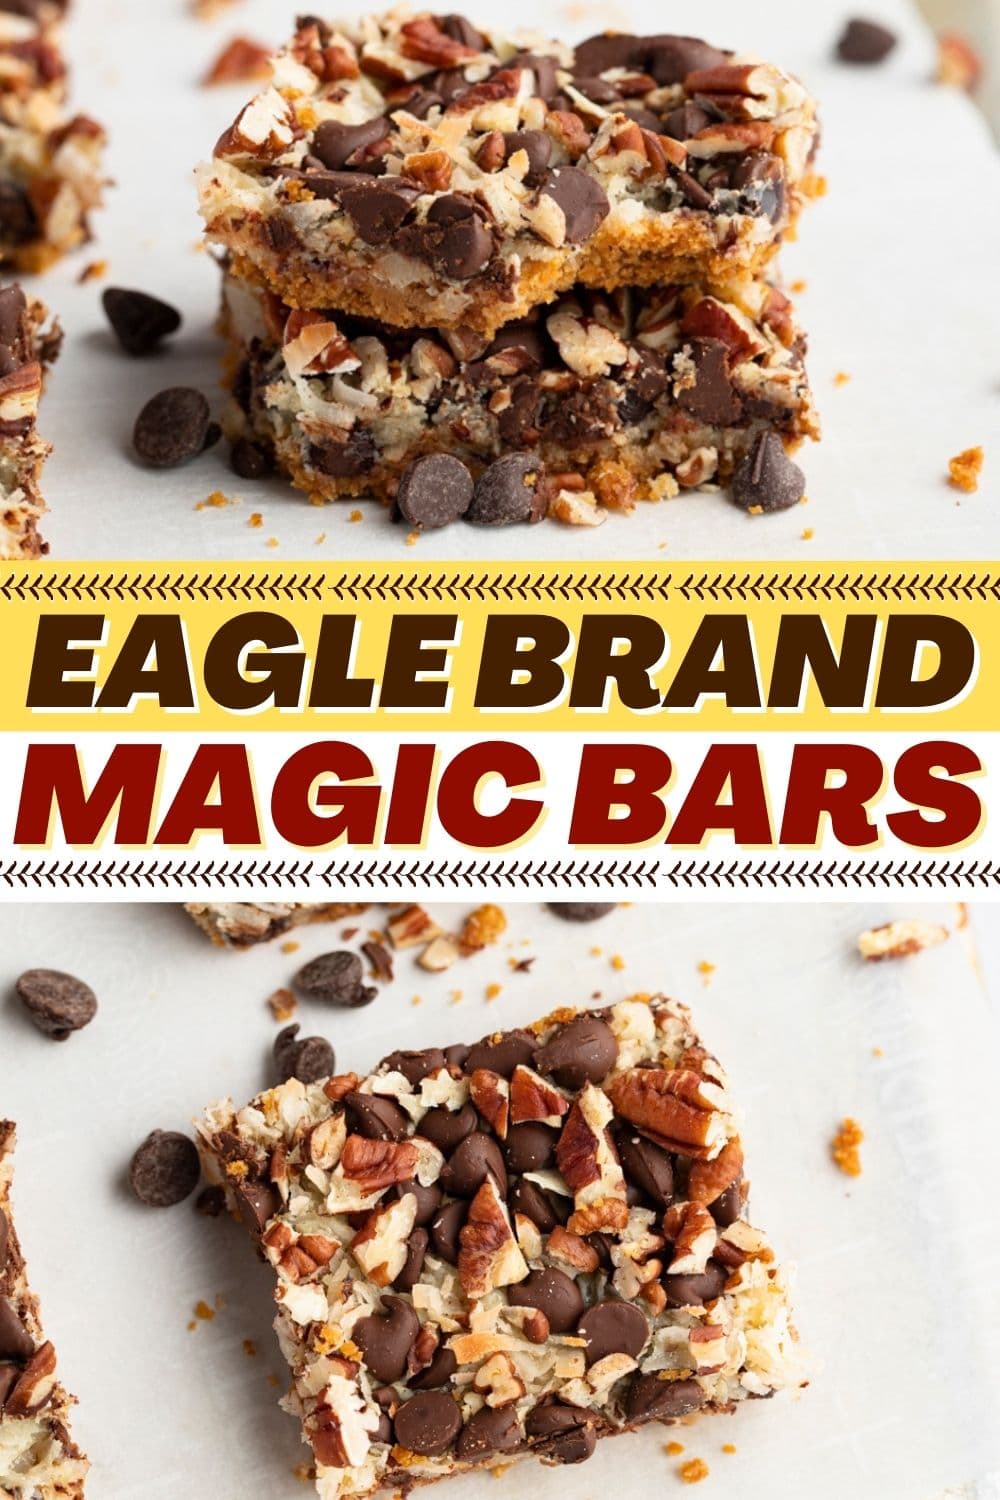 Eagle Brand Magic Bars